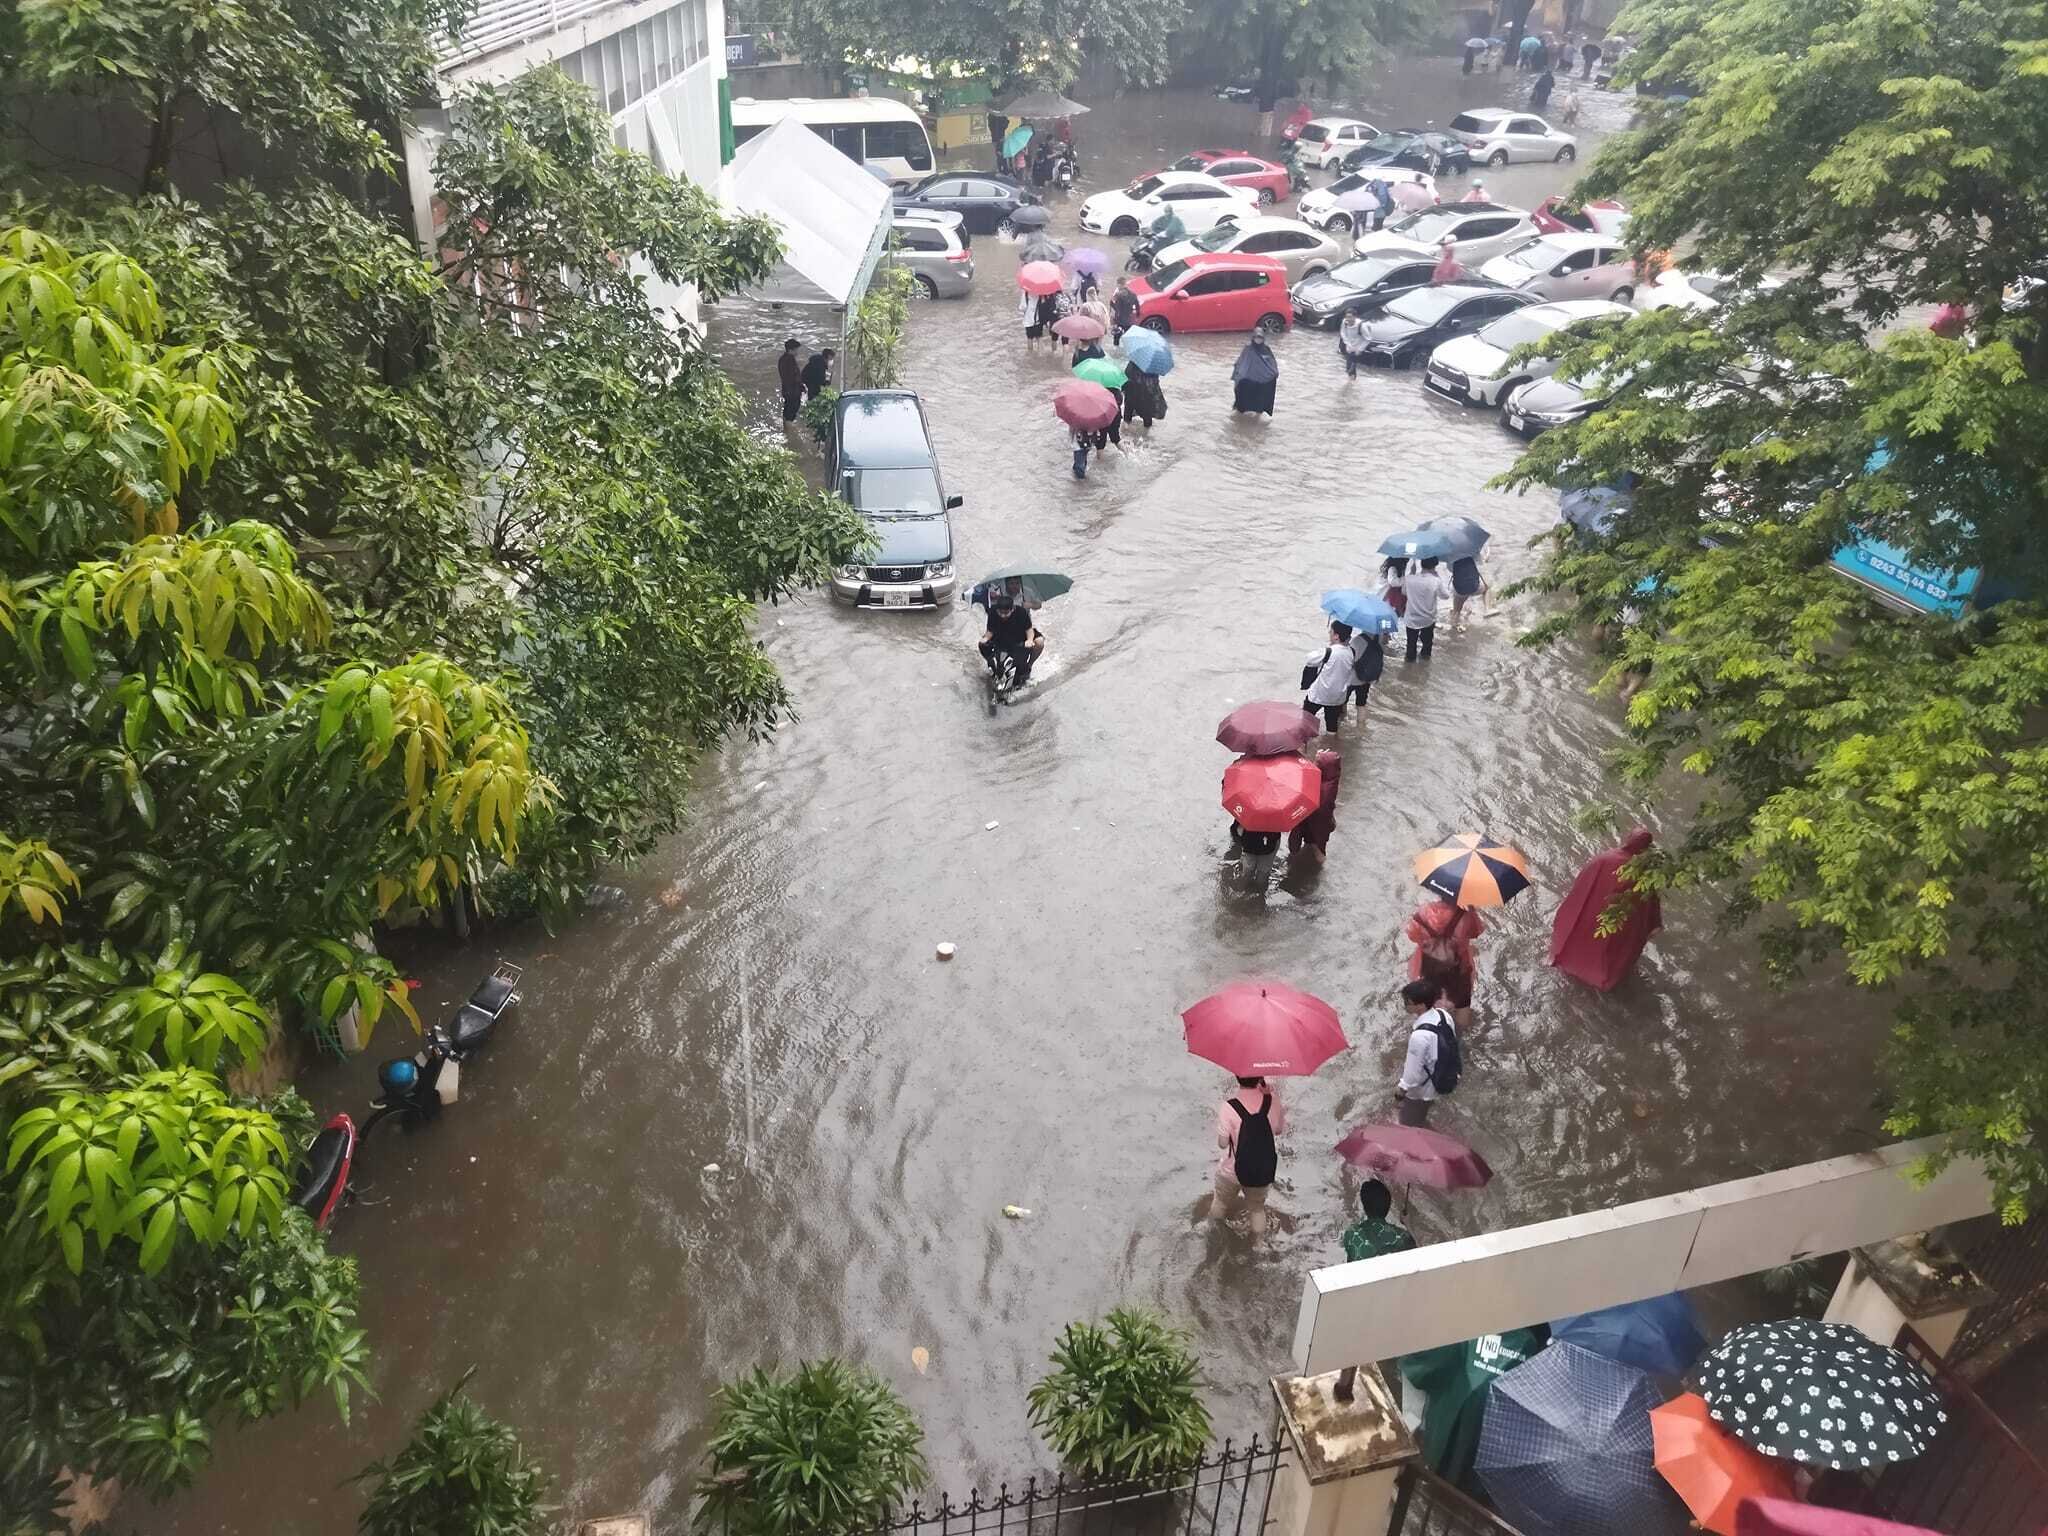 Sau giờ tan trường, nhiều học sinh bì bõm lội nước trở về nhà. Đây là khung cảnh không còn xa lạ đối ở Hà Nội mỗi lần mưa lớn. (Ảnh: G.D)